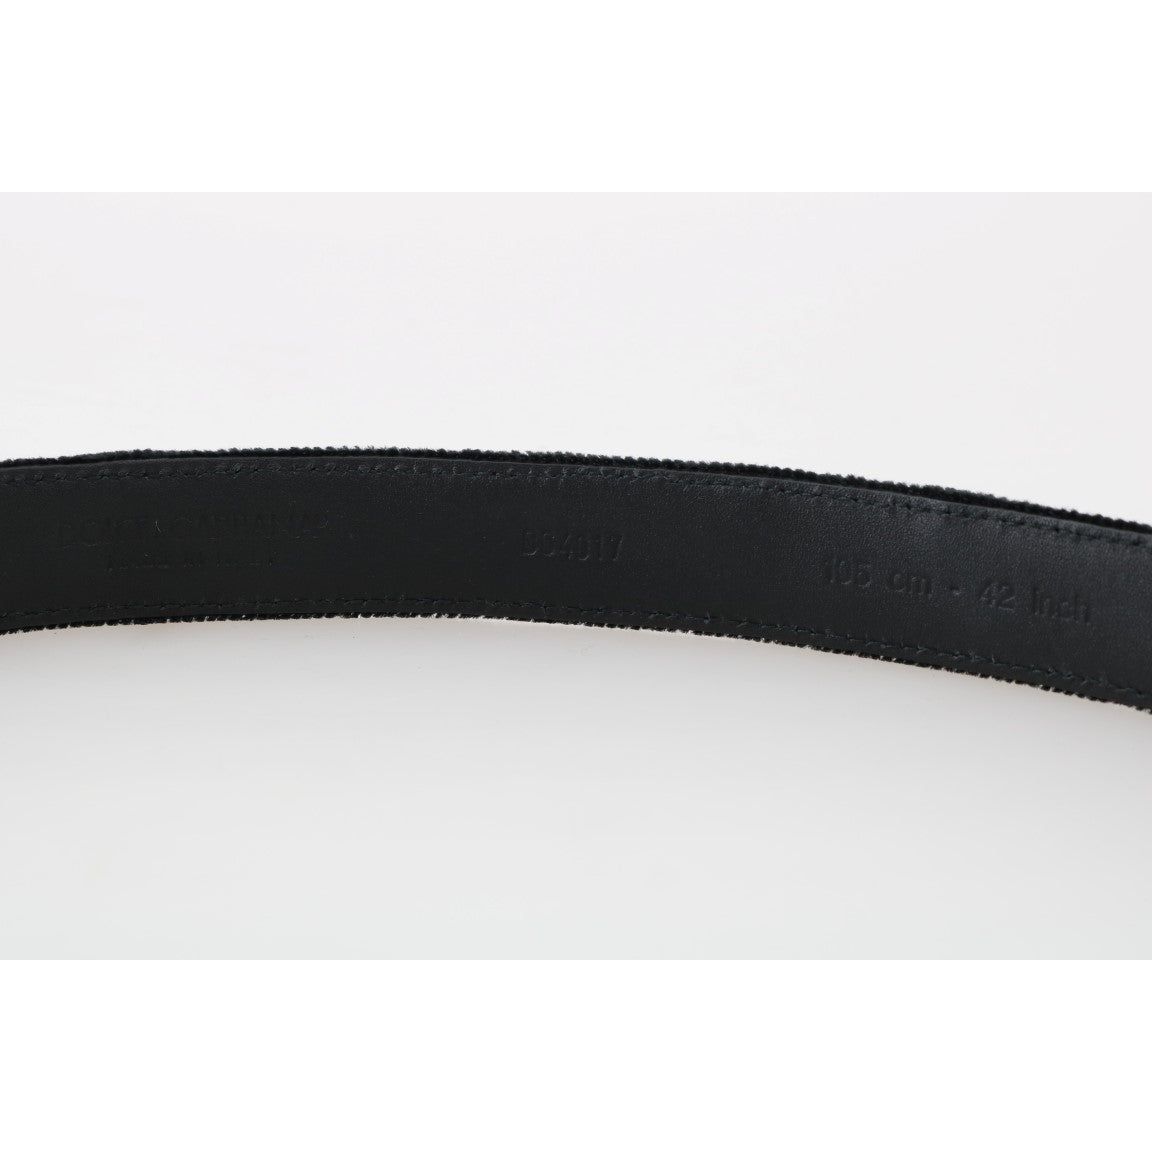 Dolce & Gabbana Elegant Black Cotton-Leather Men's Belt Belt black-cotton-royal-bee-embroidery-belt